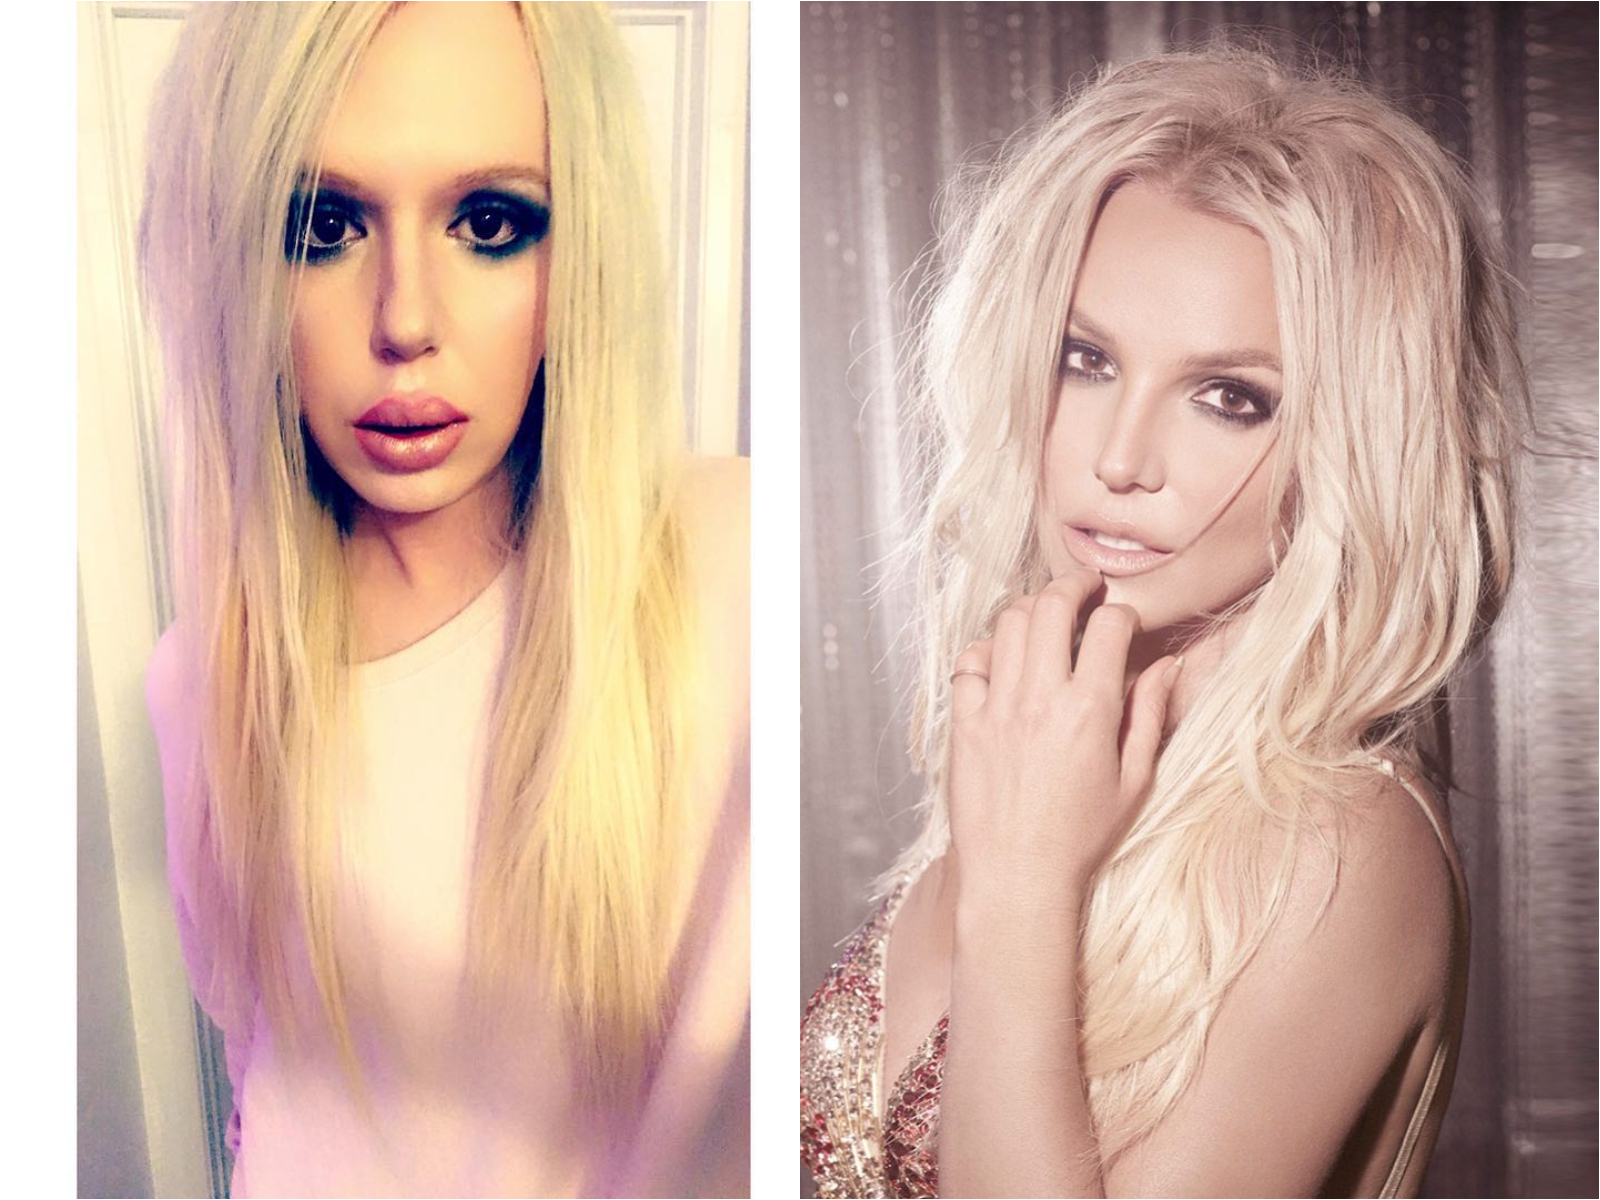 Chirurgie esthétique : Il dépense une fortune pour ressembler à Britney Spears